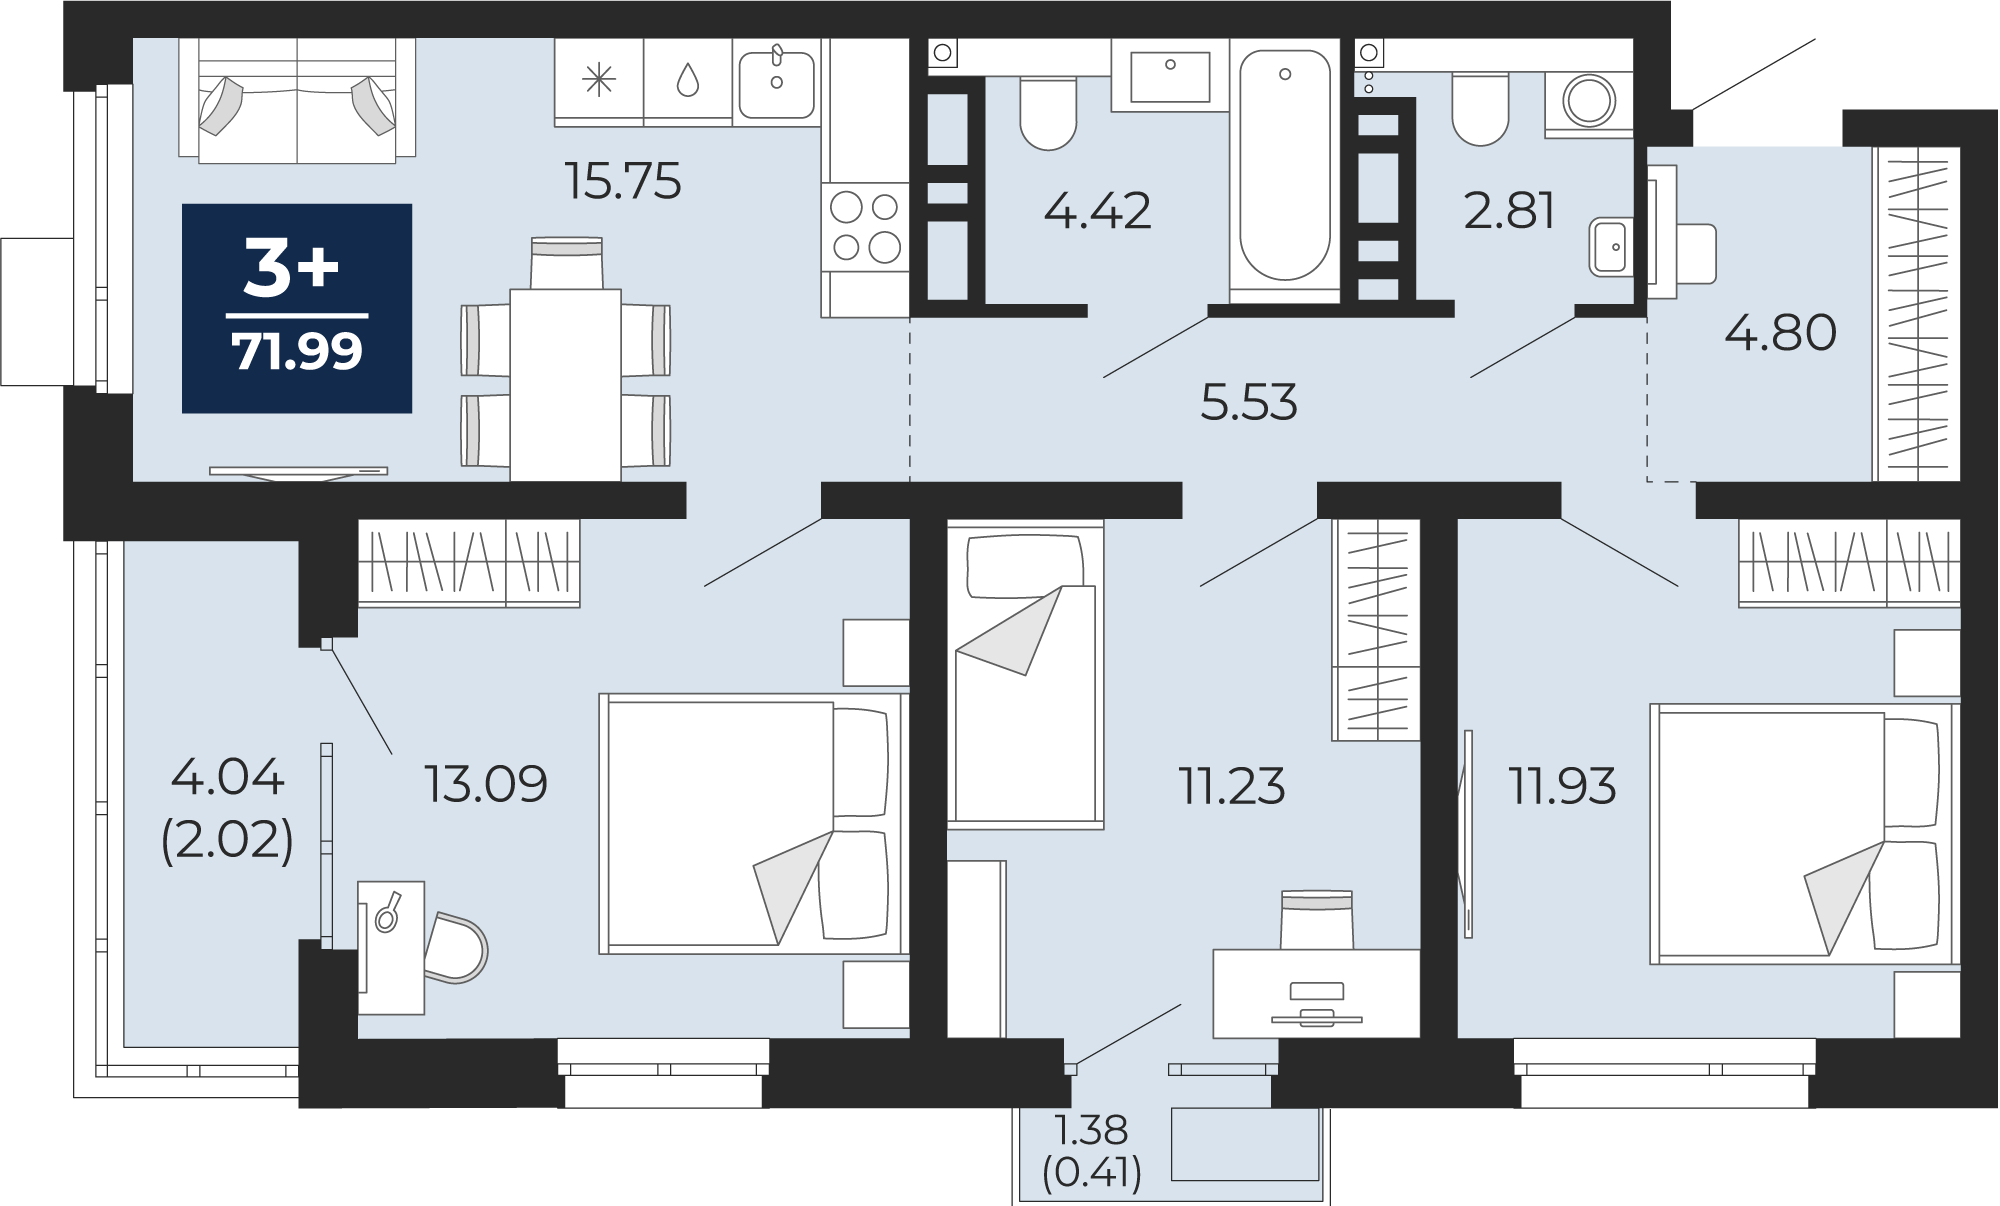 Квартира № 356, 3-комнатная, 71.99 кв. м, 6 этаж